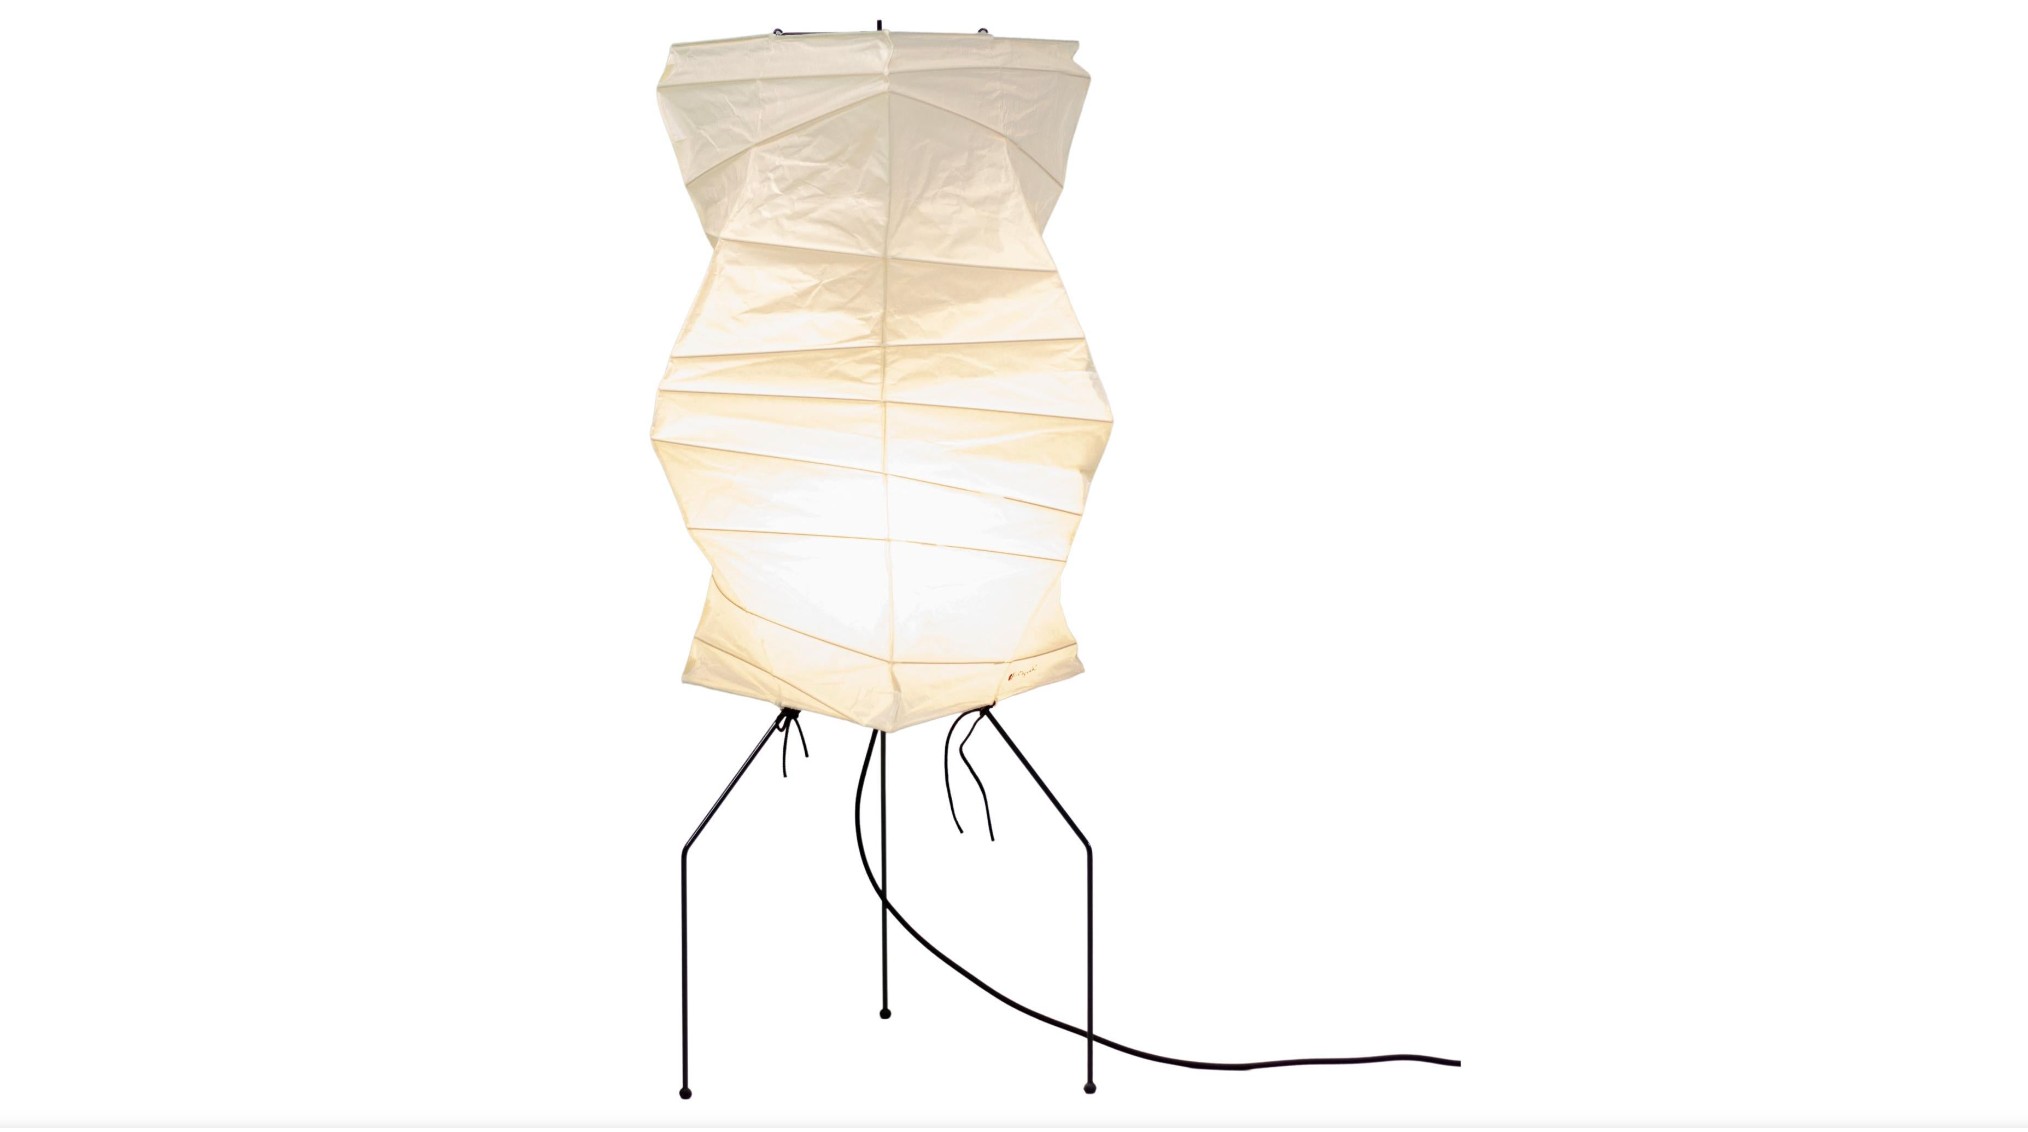 6000k Dimmen Stehlampe Noguchi Lampe japanische Reispapier lampe weiches  Licht Nachttisch lampe für Wohnzimmer Schlafzimmer Dekor